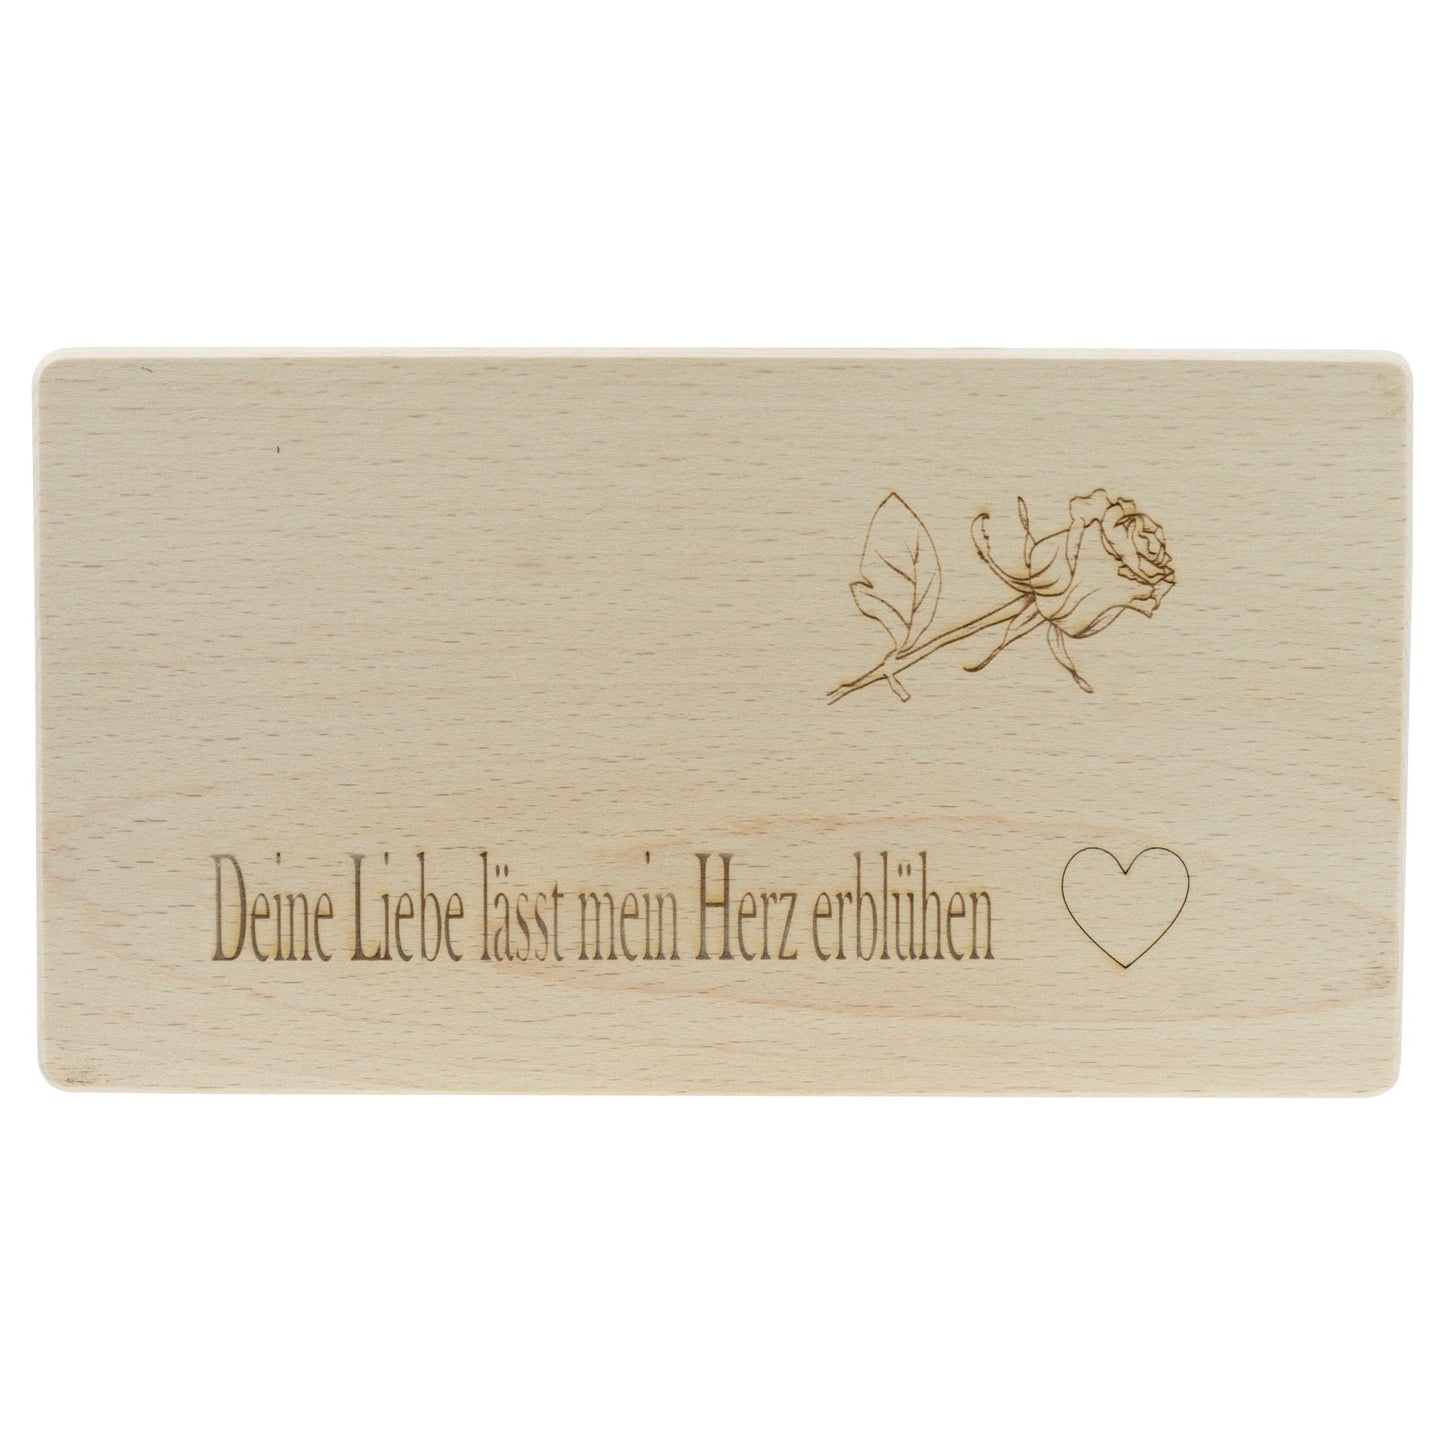 Frühstücksbrettchen Personalisierung Liebe Blume mit Beschriftung Holz Laser mit Name Bild Holz Brett Geschenk  220 x 120 x 10 mm (LxBxH)